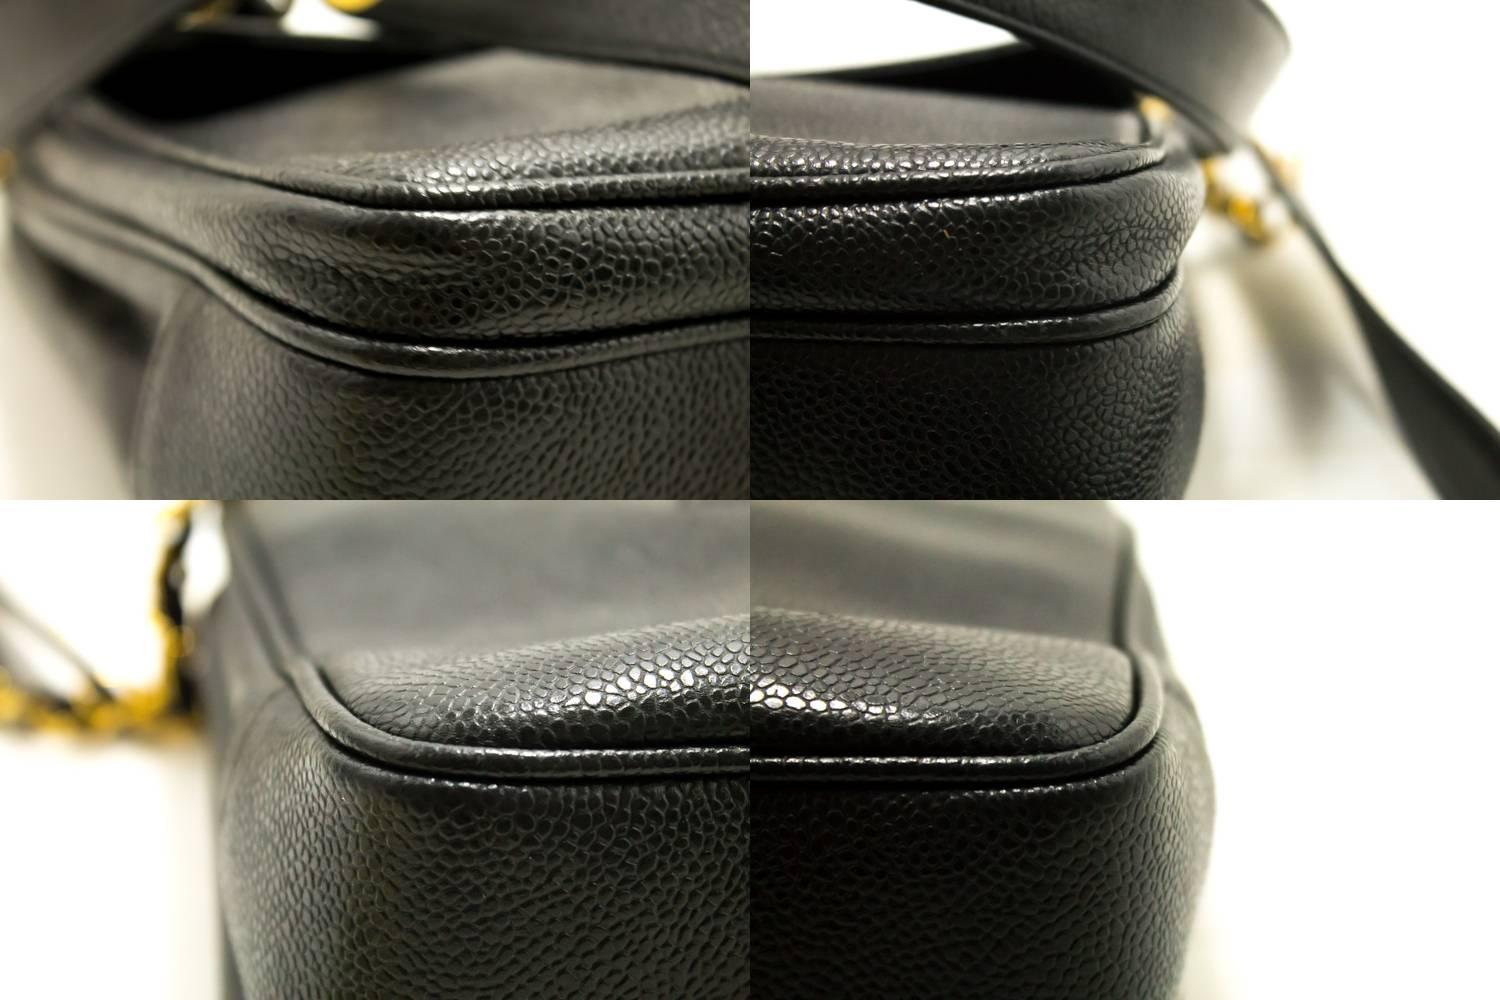 CHANEL Caviar Chain Shoulder Bag Black Leather Gold Hw CC Pocket 2